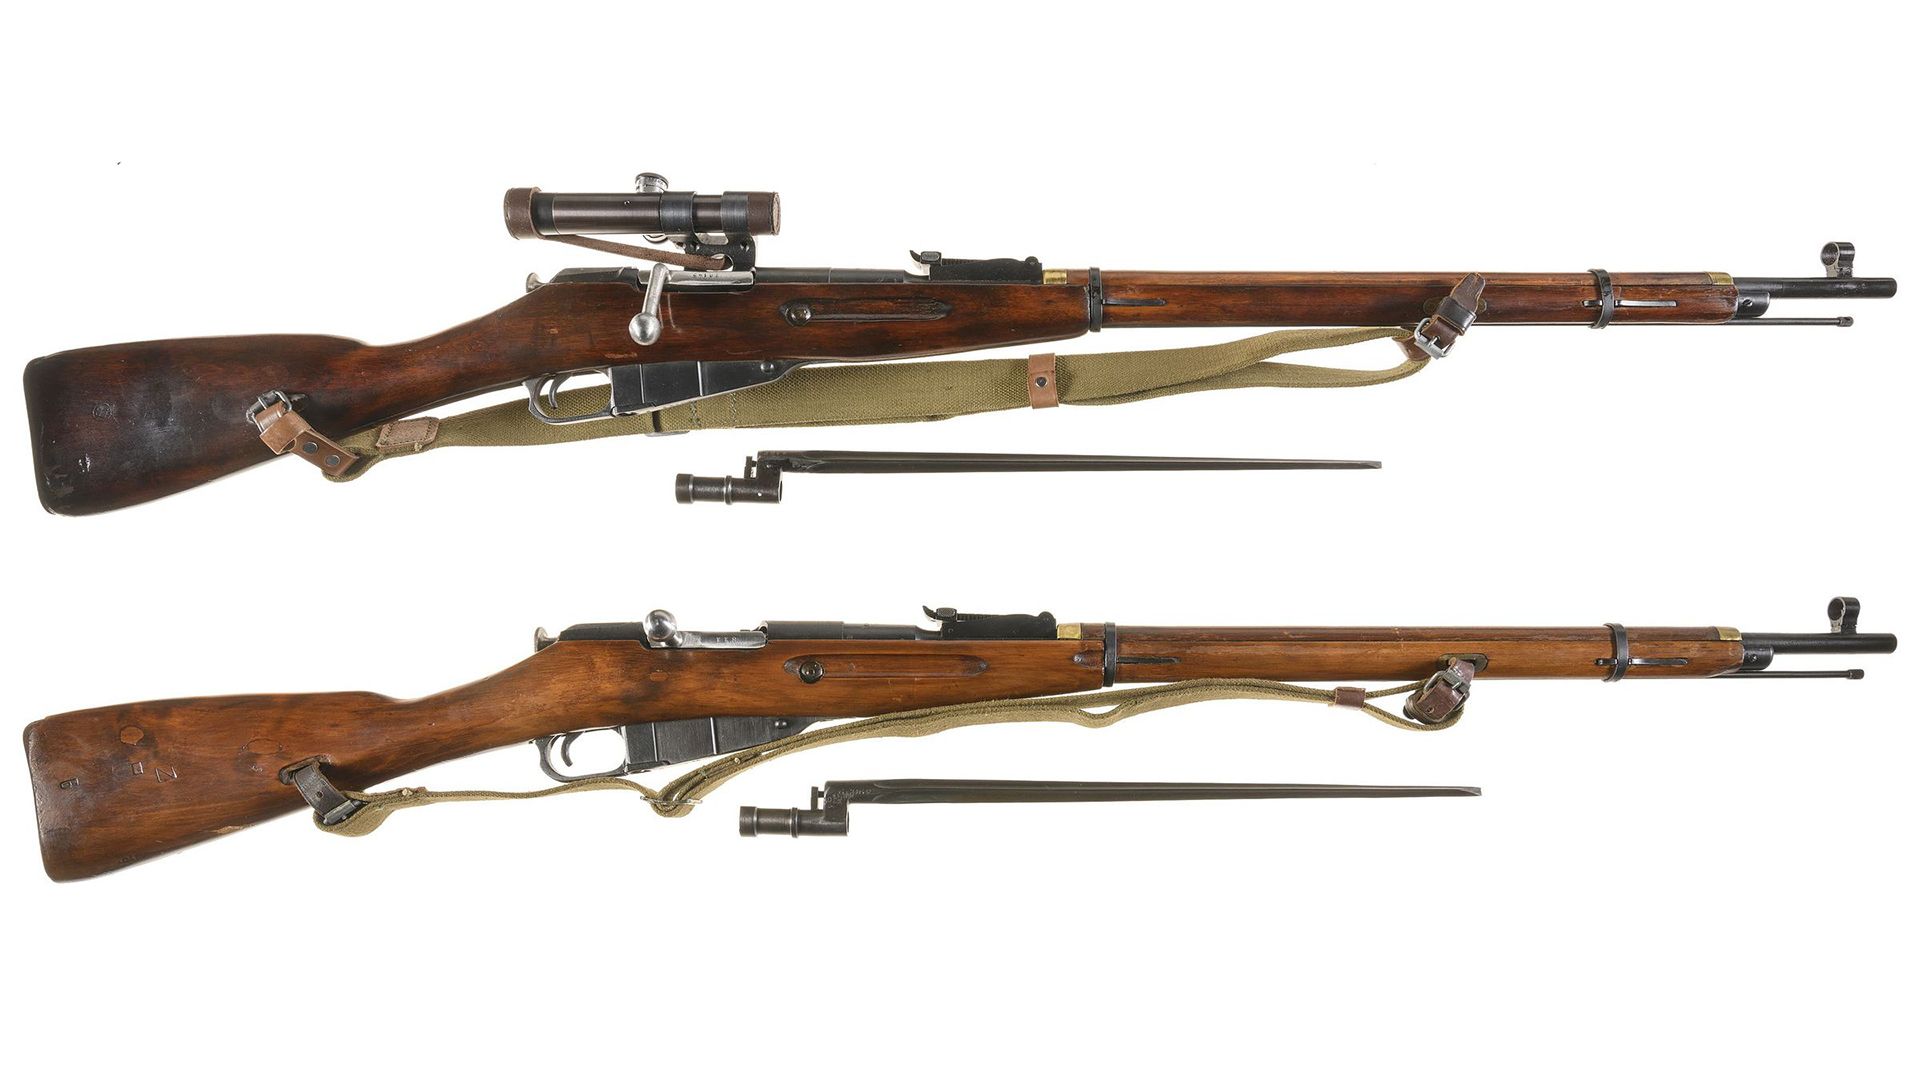 Soviet Mosin-Nagant rifles